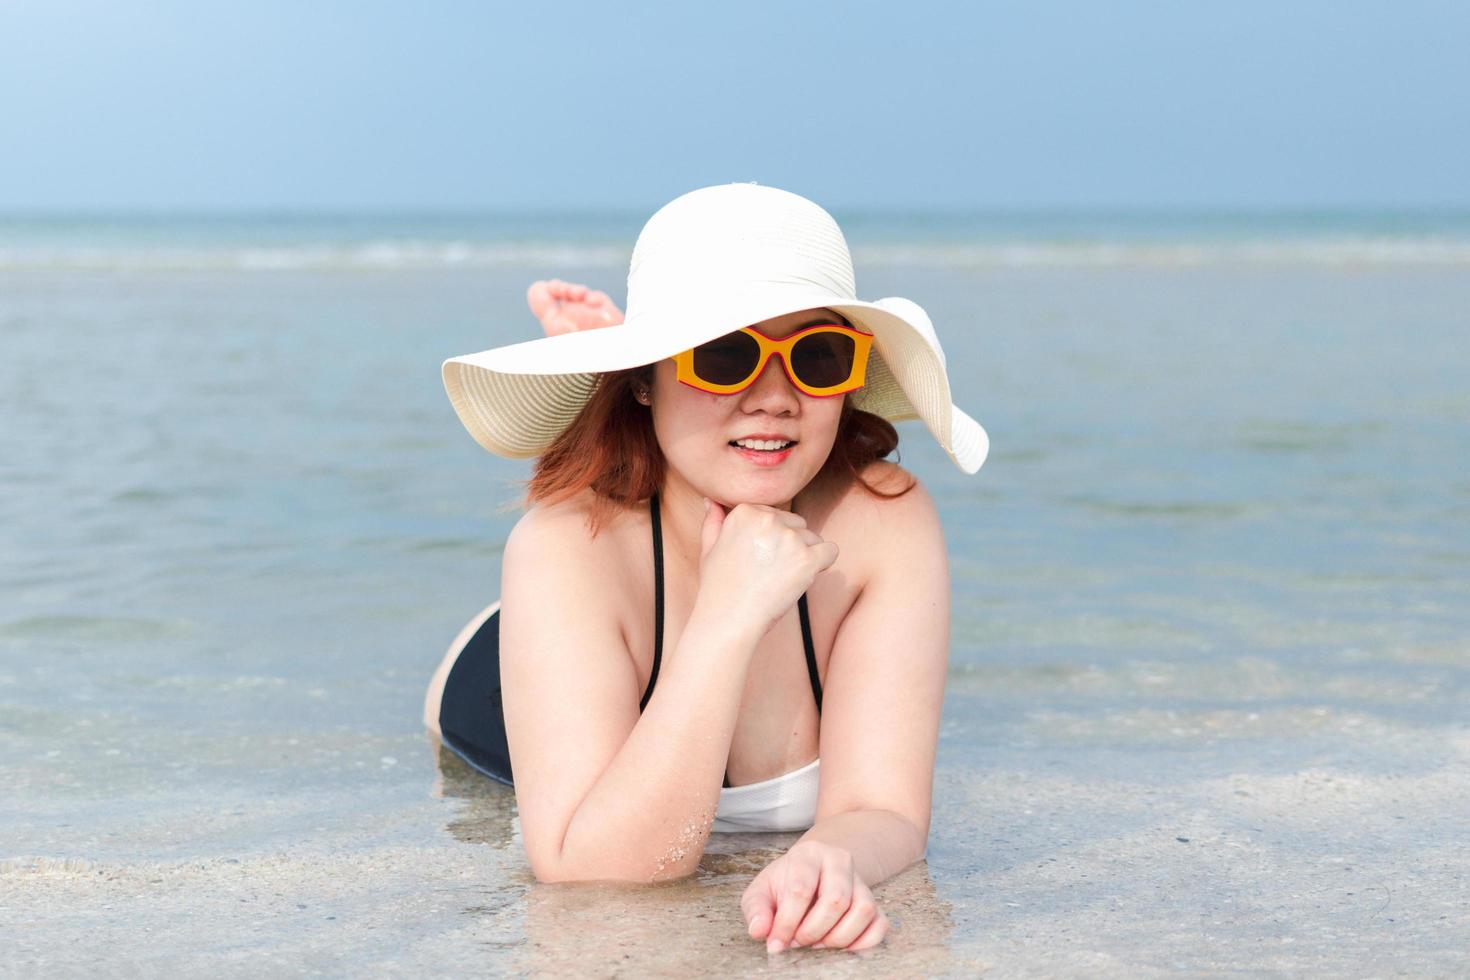 une femme blanche dodue en maillot de bain, chapeau blanc et lunettes de soleil jaunes est allongée sur la plage en souriant. photo